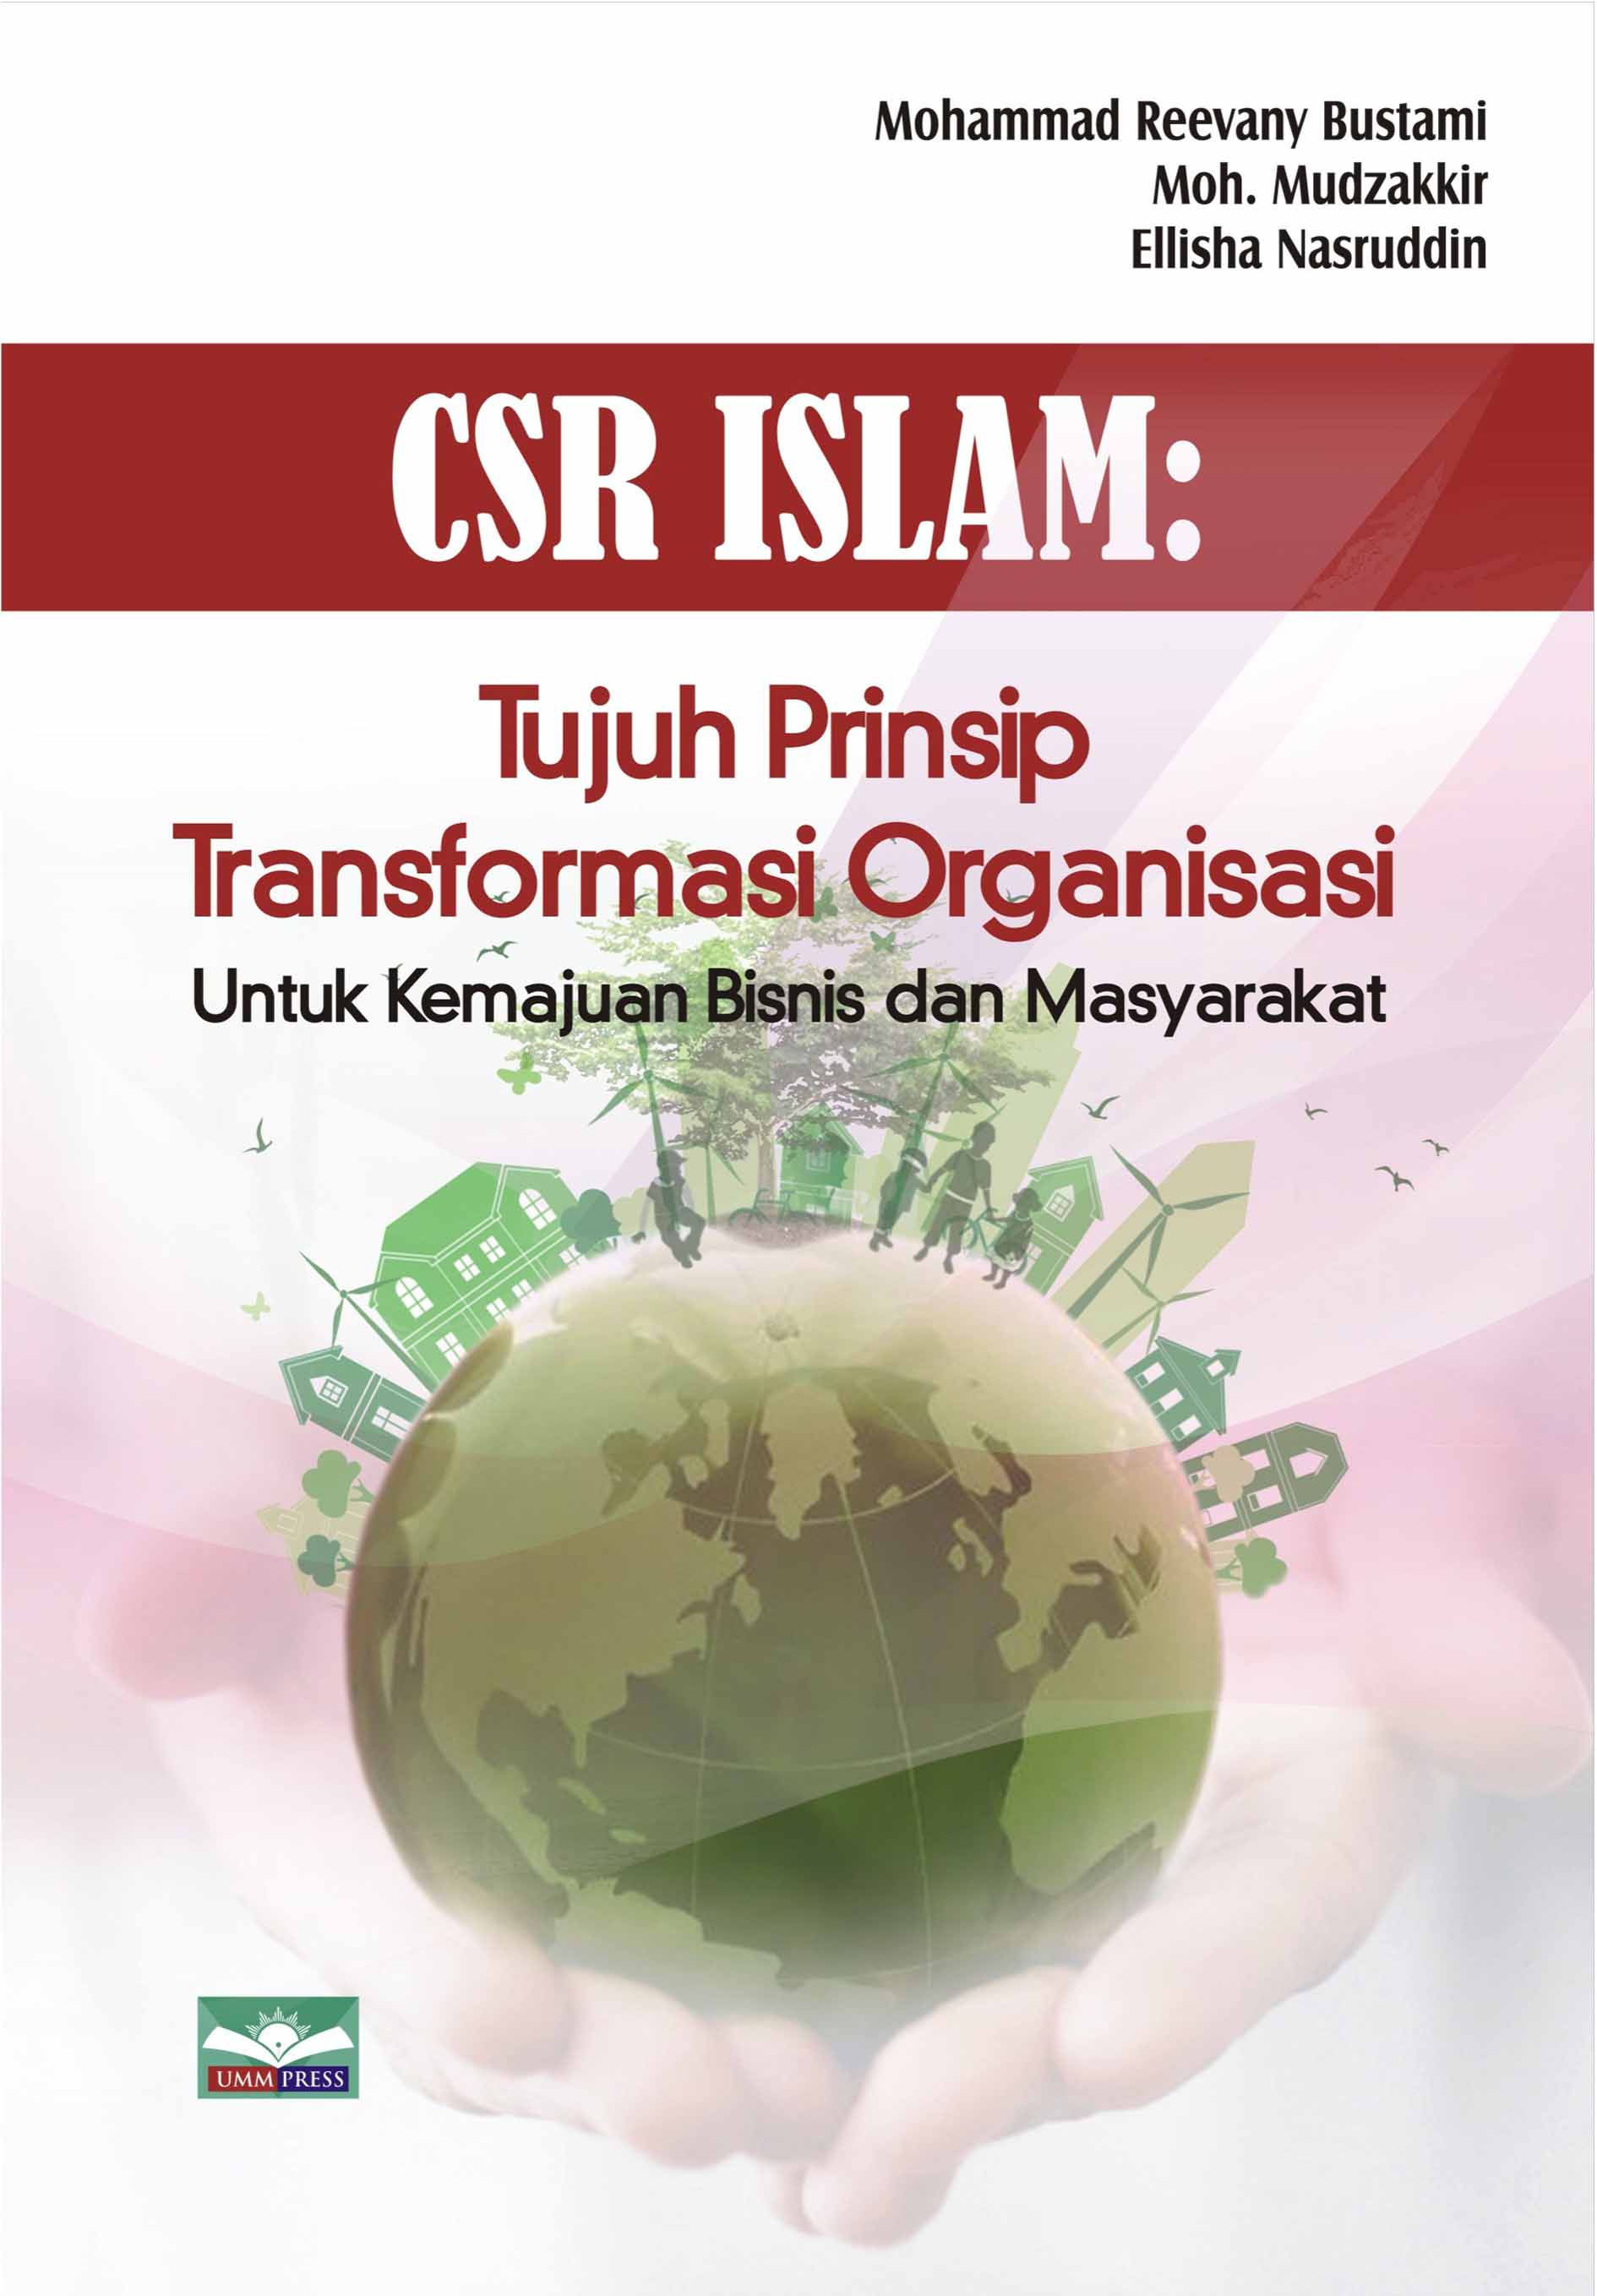 CSR ISLAM: TUJUH PRINSIP TRANSFORMASI ORGANISASI UNTUK KEMAJUAN BISNIS DAN MASYARAKAT